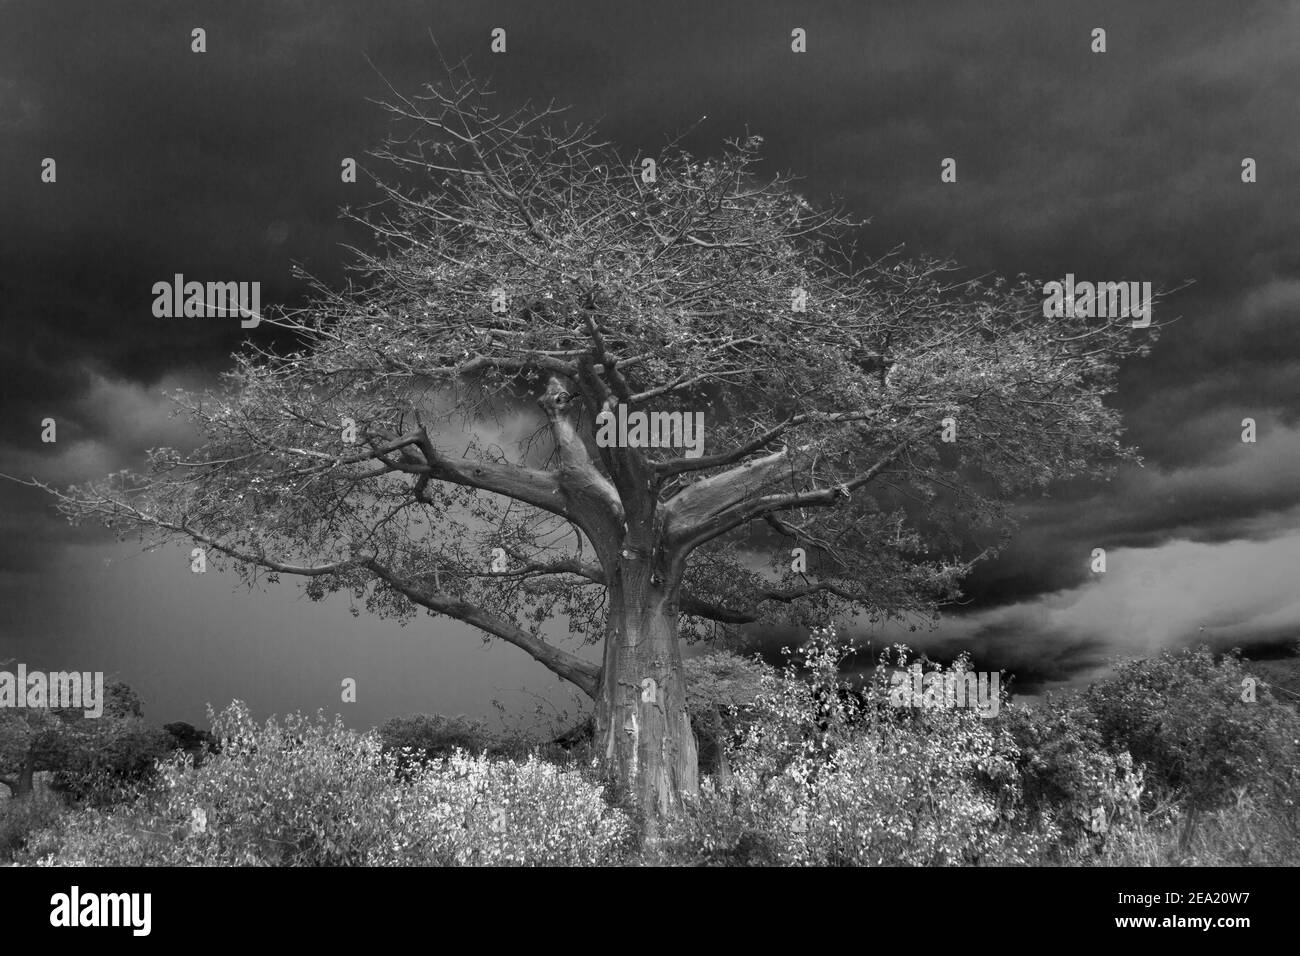 Le nubi della tempesta della stagione piovosa si radunano dietro un grande albero di Baobab, evidenziando il profilo e la forma distintivi di questo albero primitivo. Foto Stock